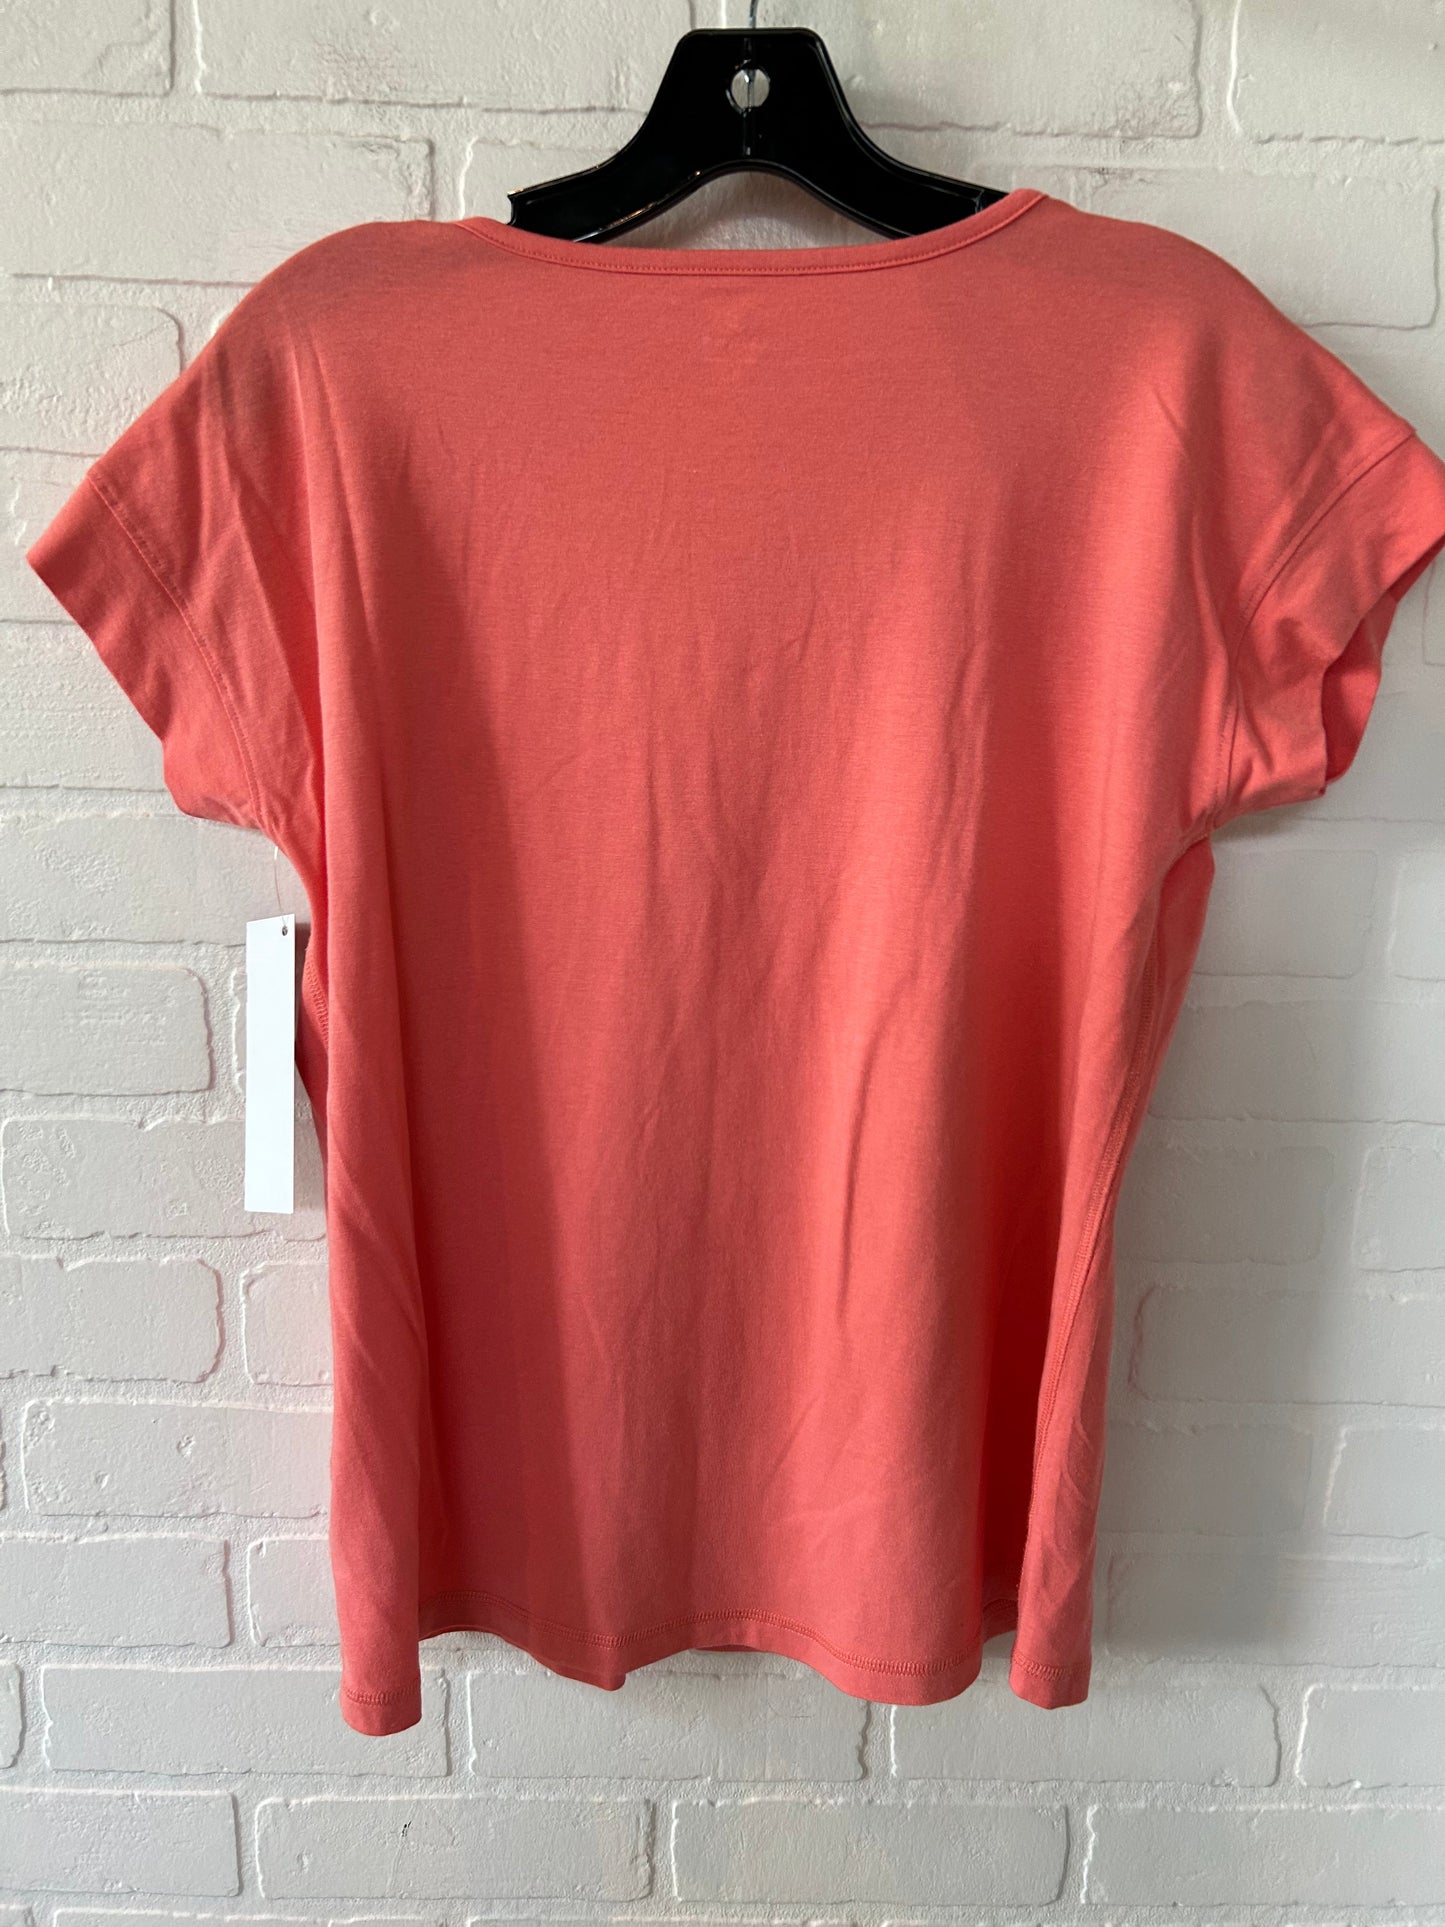 Orange Top Short Sleeve Basic Talbots, Size M